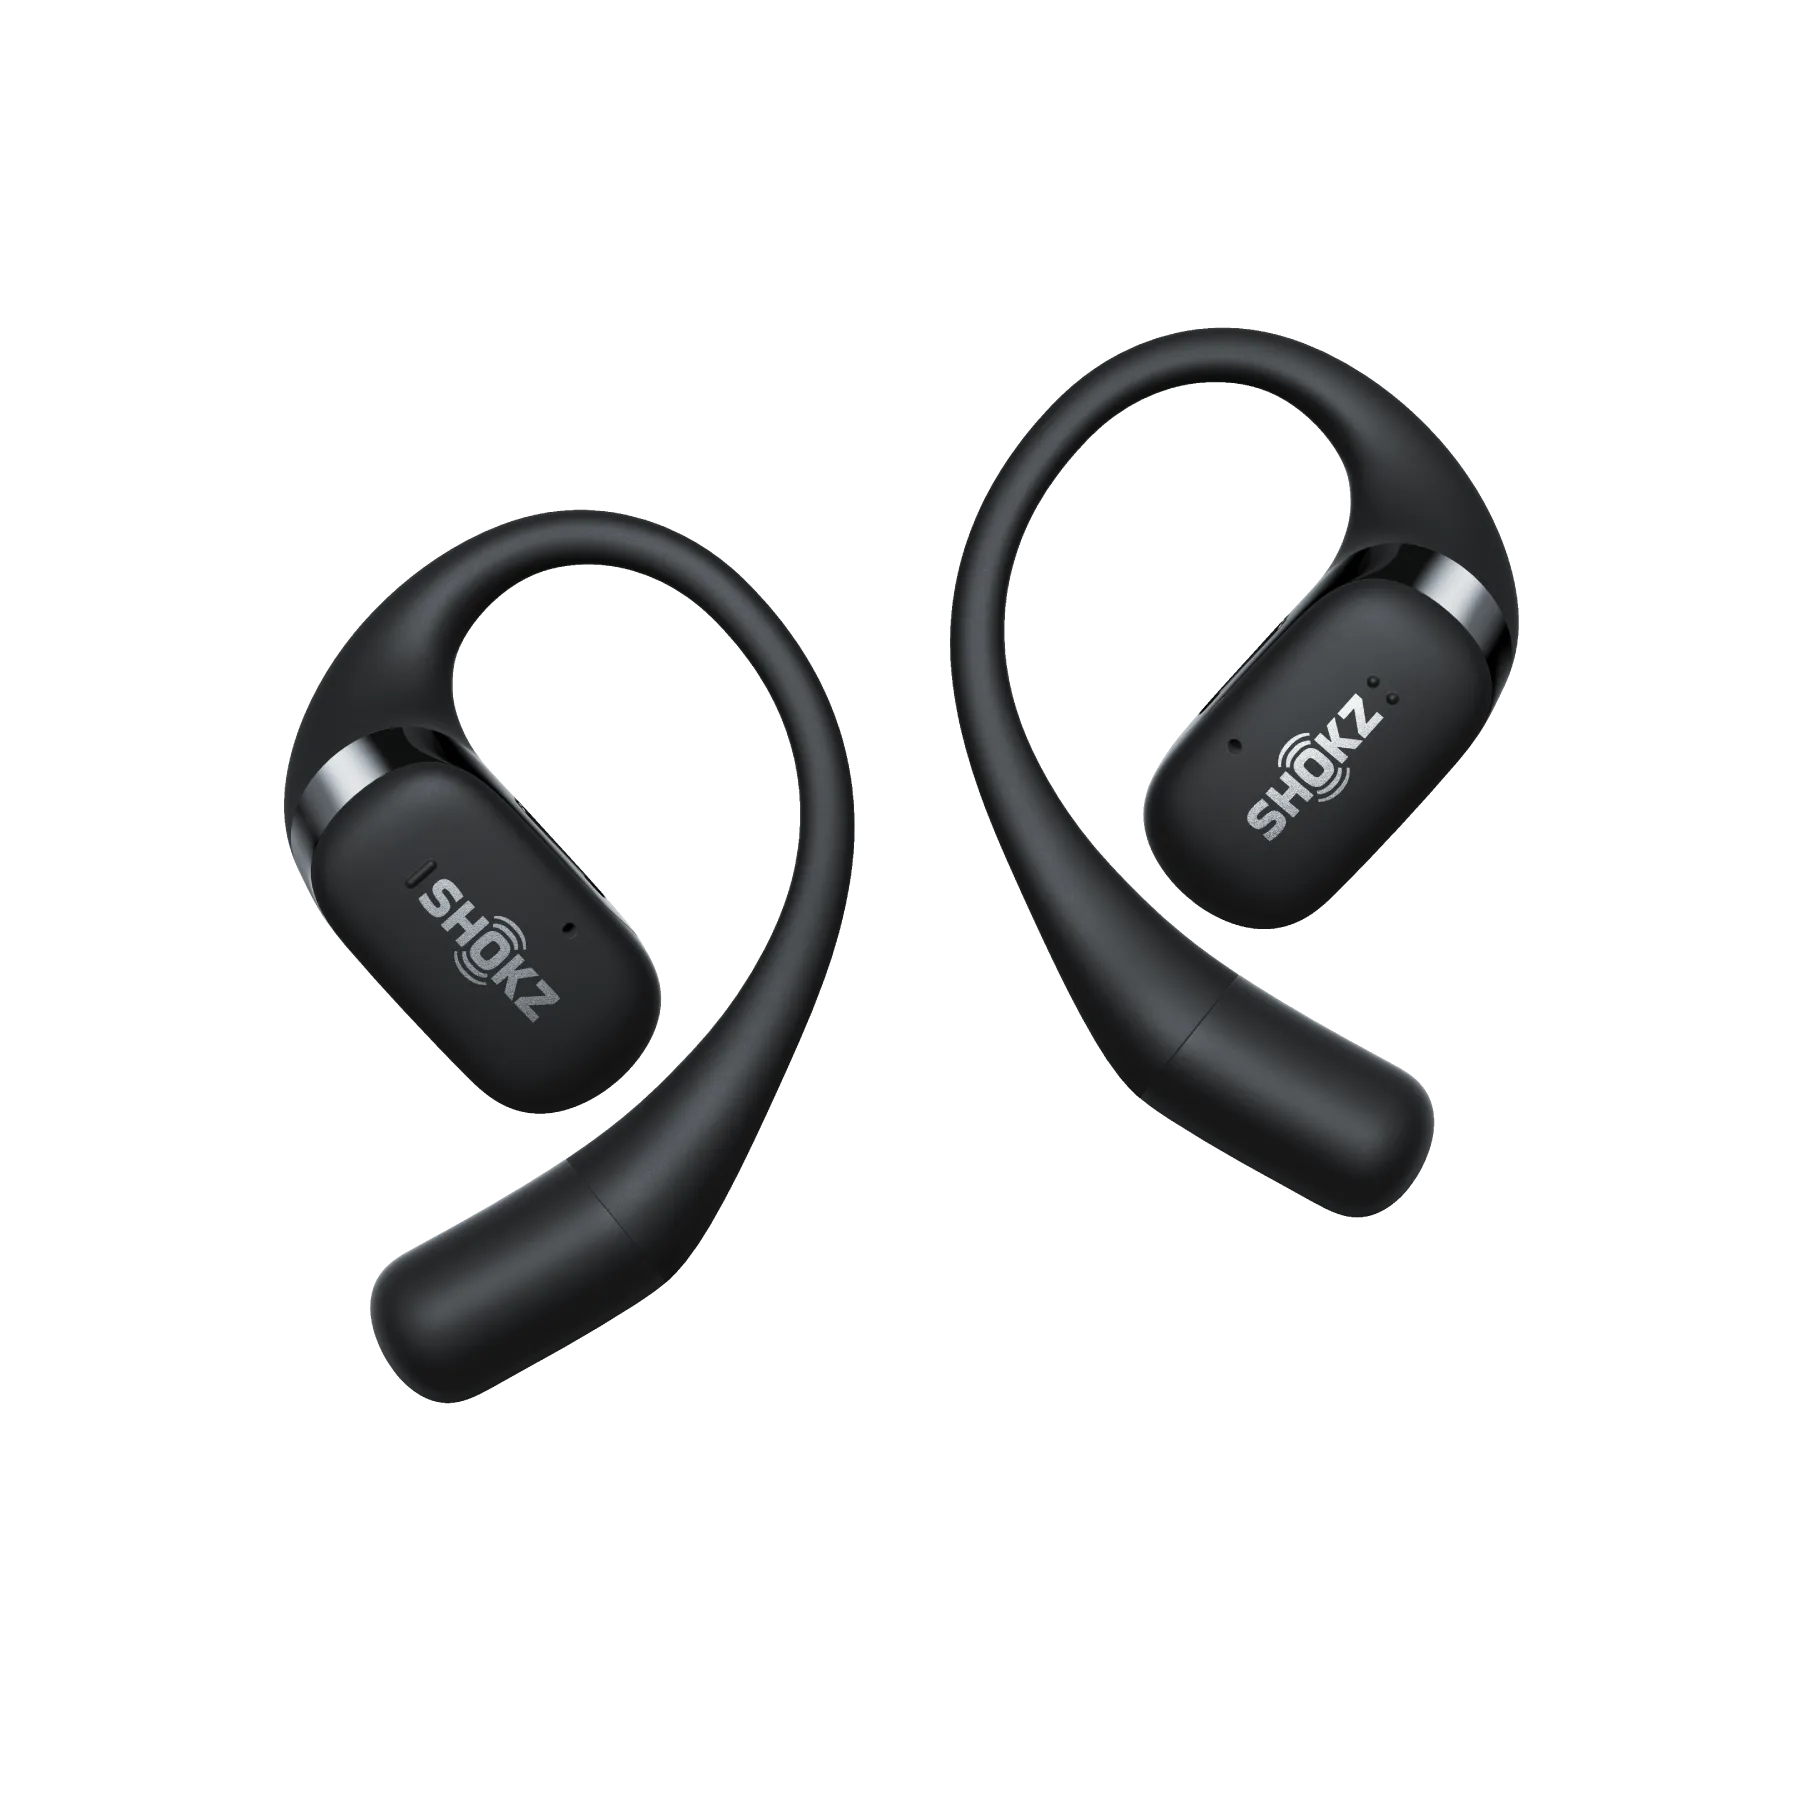 Auriculares Bluetooth 5,2 inalámbricos de larga espera para negocios,  deportivos, con gancho para la oreja, llamadas manos libres, auriculares de  una